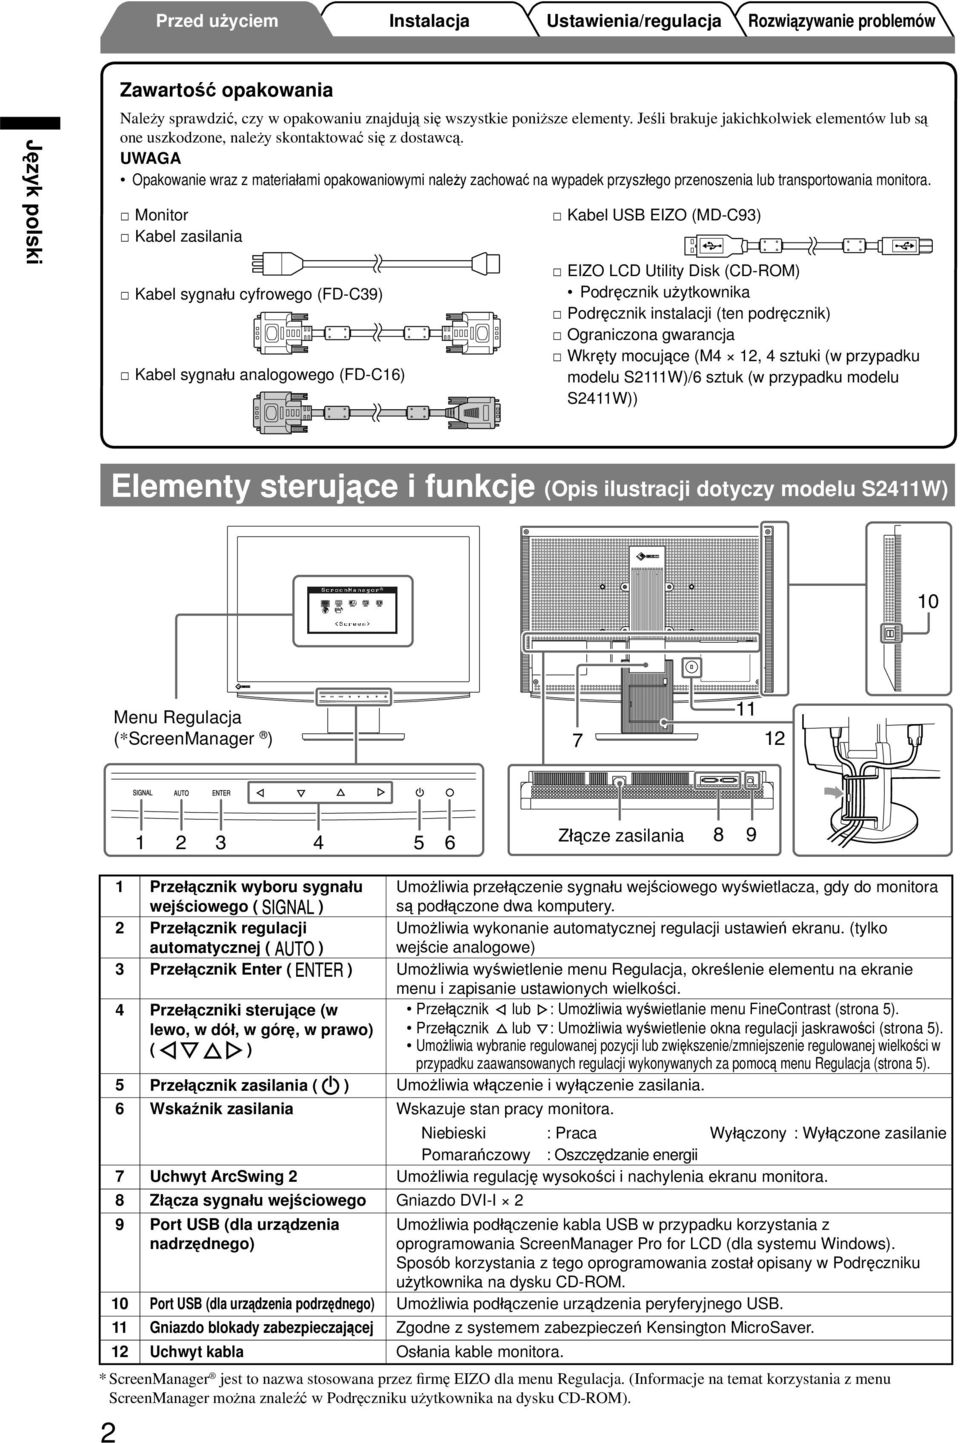 Monitor Kabel zasilania Kabel sygnału cyfrowego (FD-C9) Kabel sygnału analogowego (FD-C6) Kabel USB EIZO (MD-C9) EIZO LCD Utility Disk (CD-ROM) Podręcznik użytkownika Podręcznik instalacji (ten